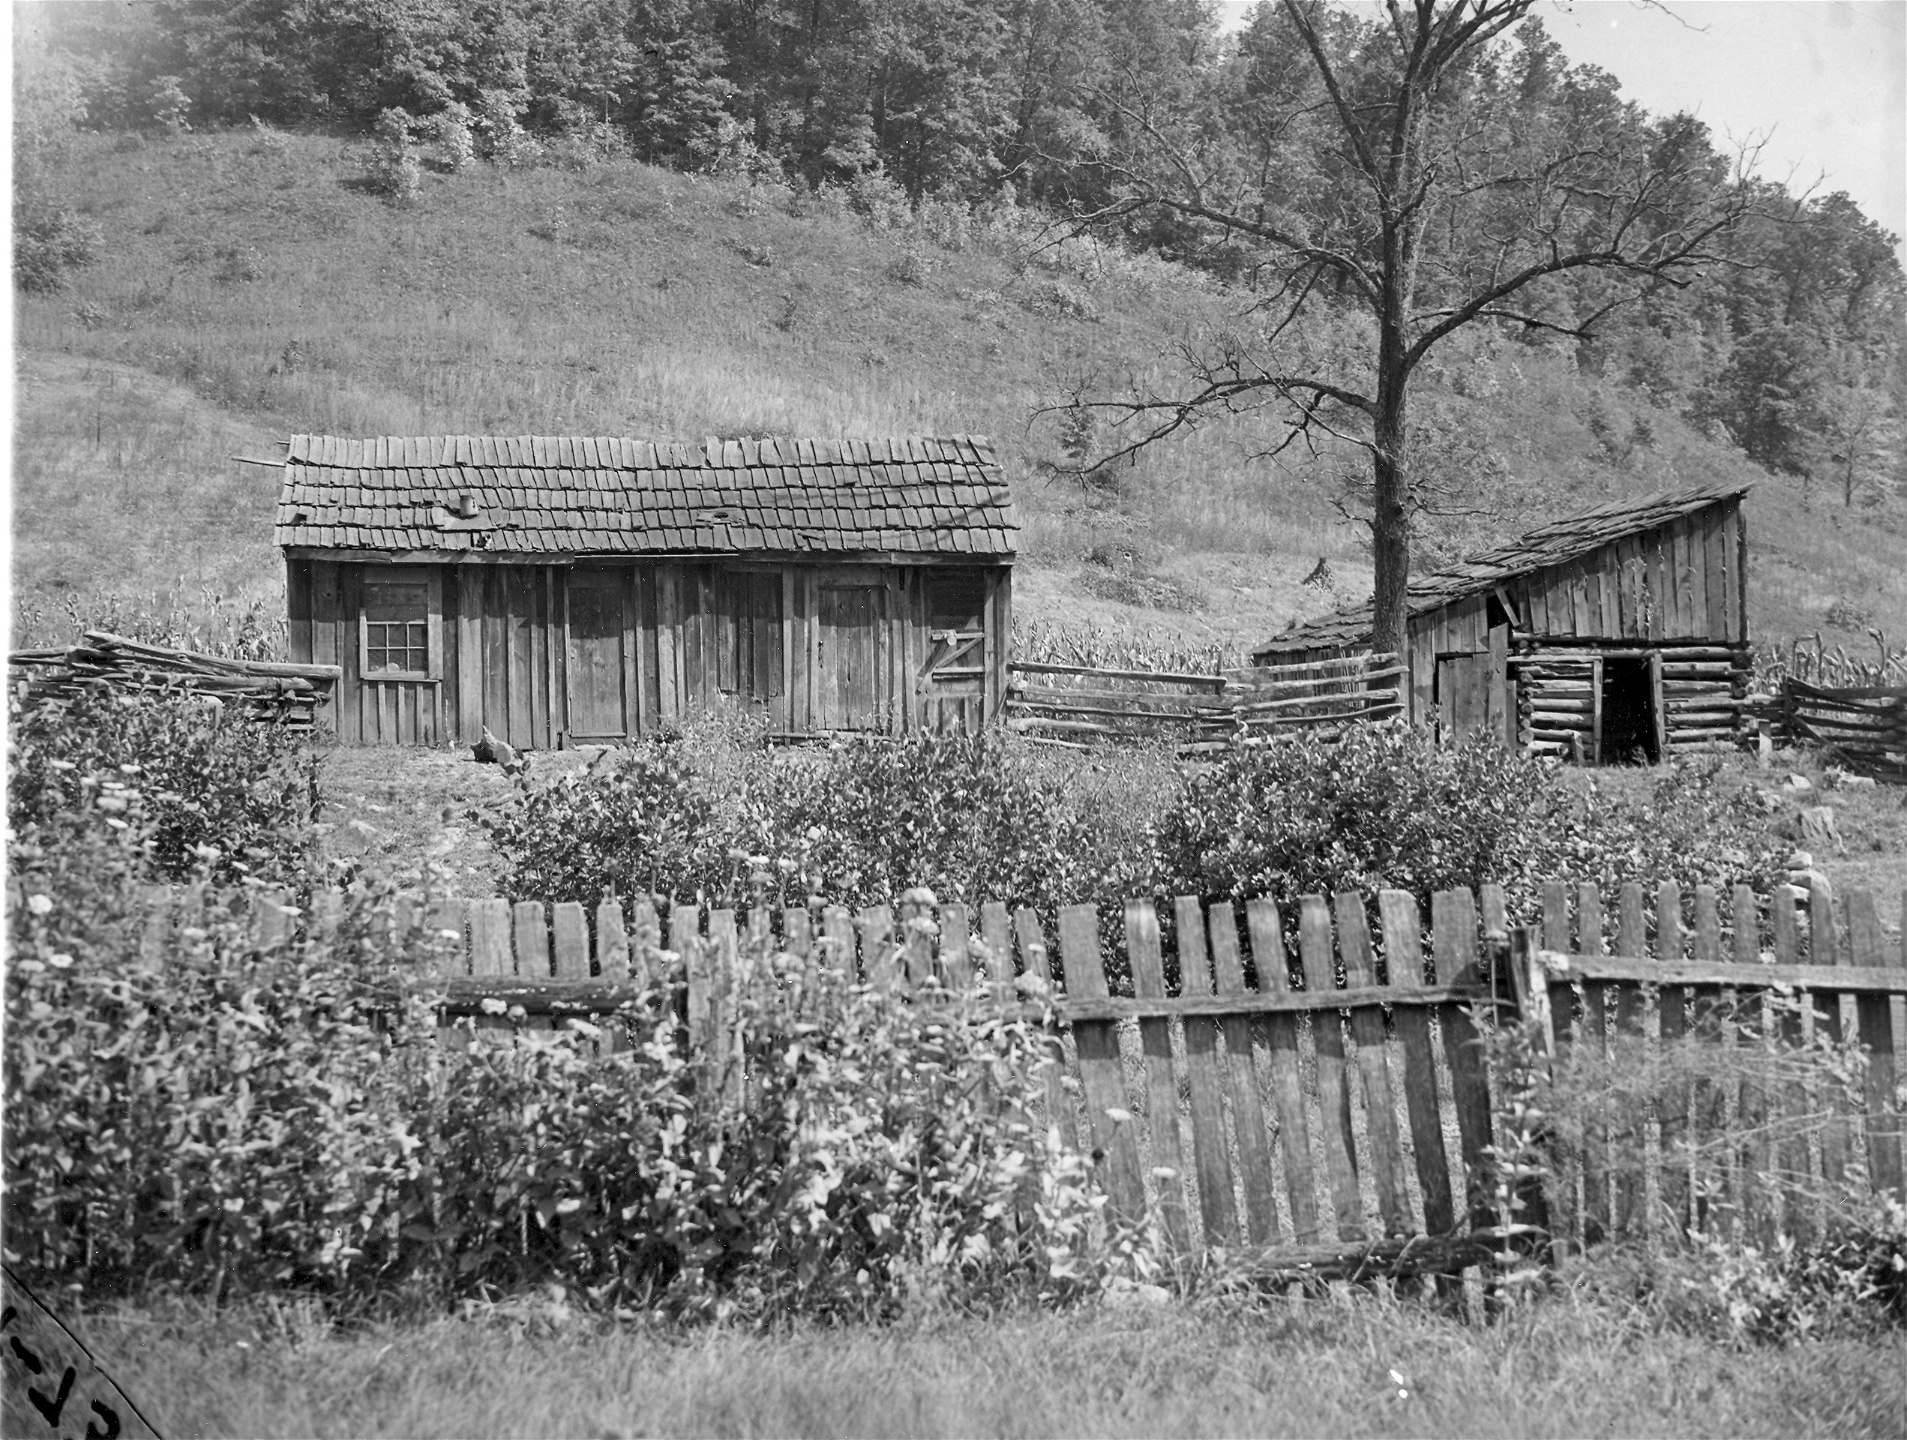 En bostad på landsbygden i Cumberland, Kentucky 1937. Här levde en fattig arbetarfamilj i skjulliknande hus. 